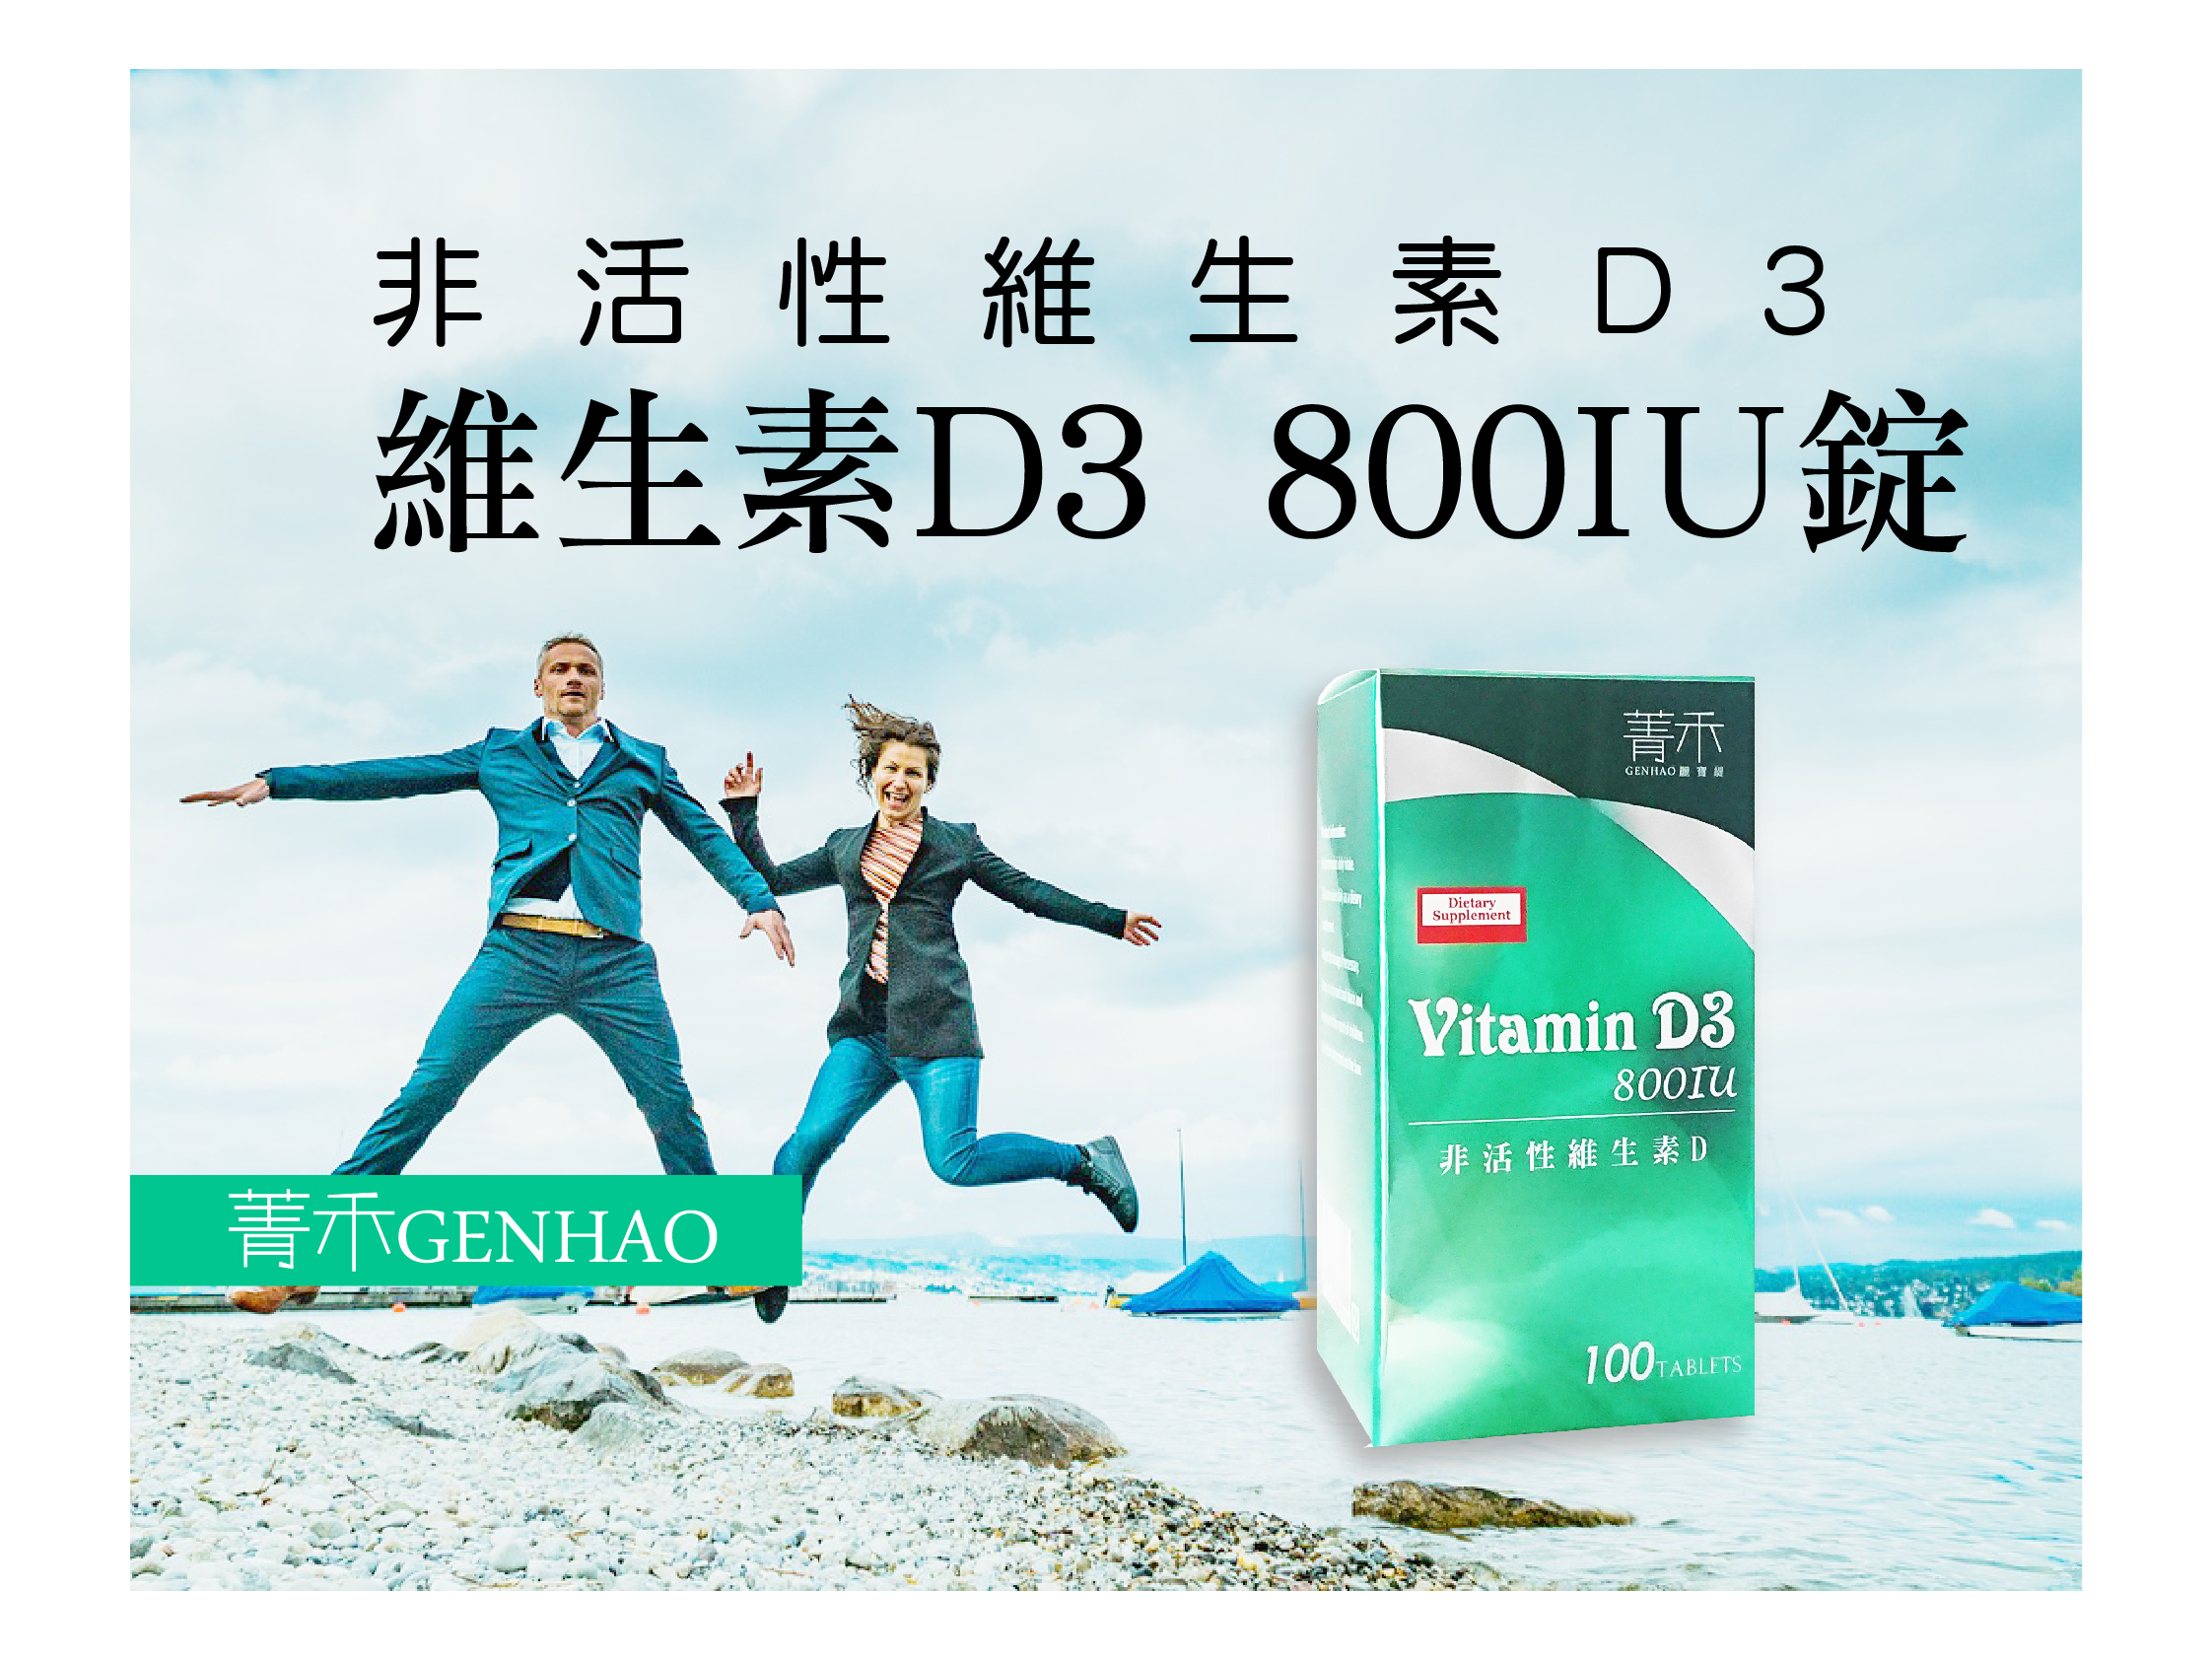 【菁禾GENHAO】非活性維生素D3 800IU錠 71g (100粒/盒)